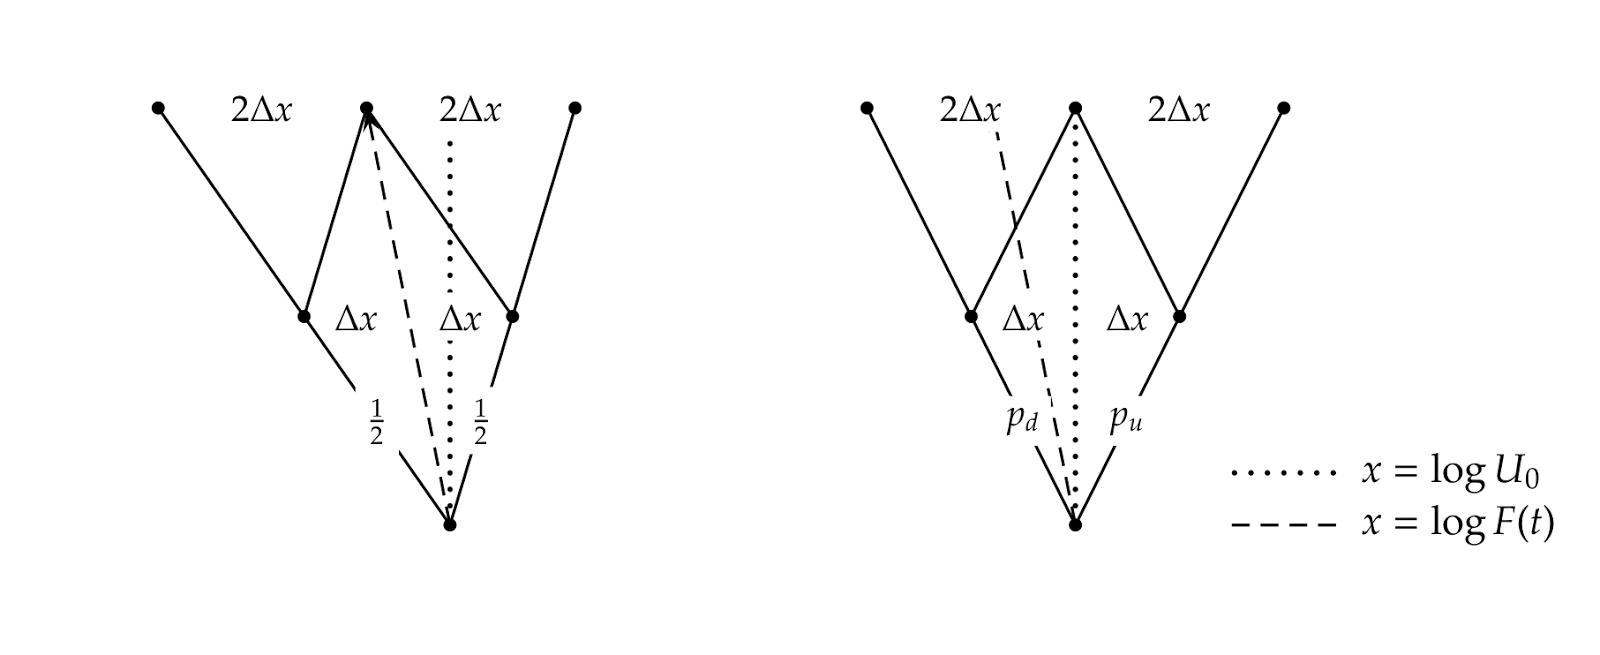 binomial tree diagram